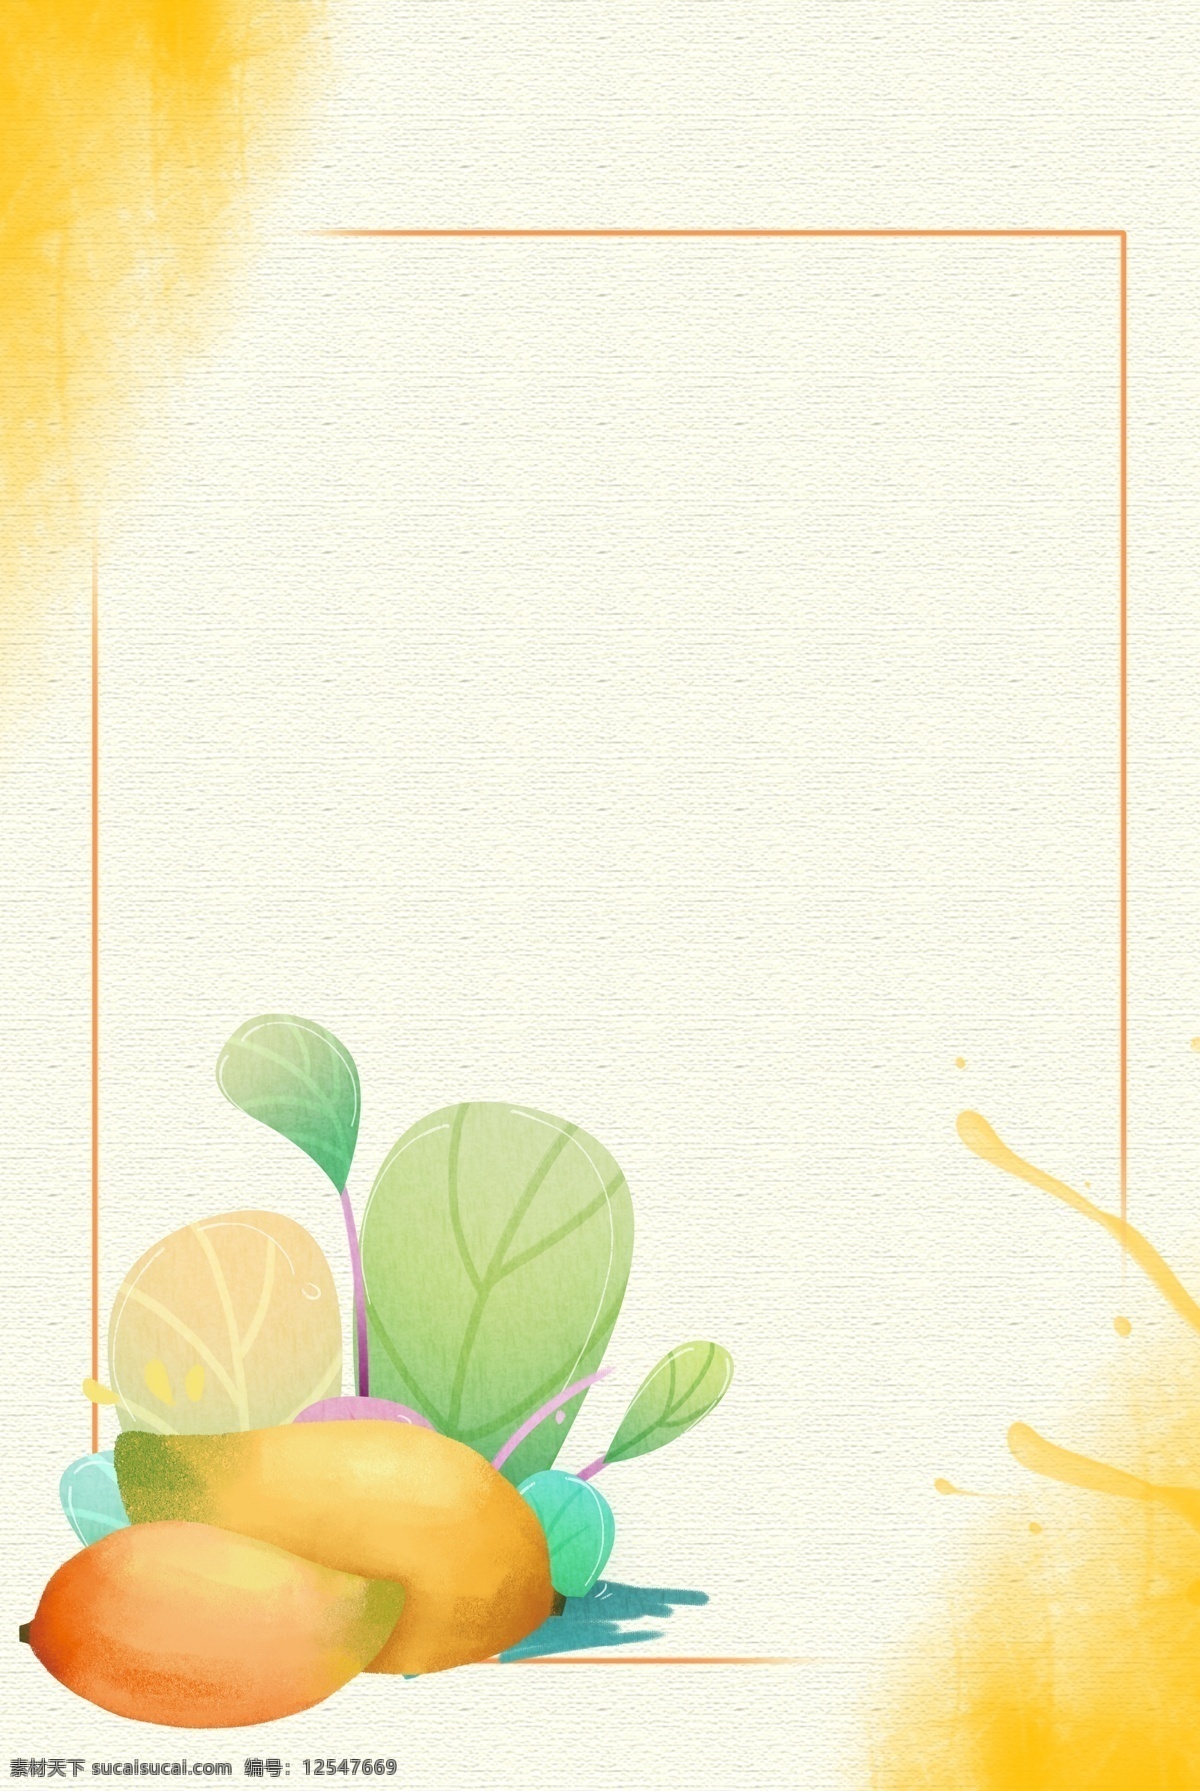 芒果水果背景 简约 清新 纹理 淡雅 水果 芒果 卡通 花卉